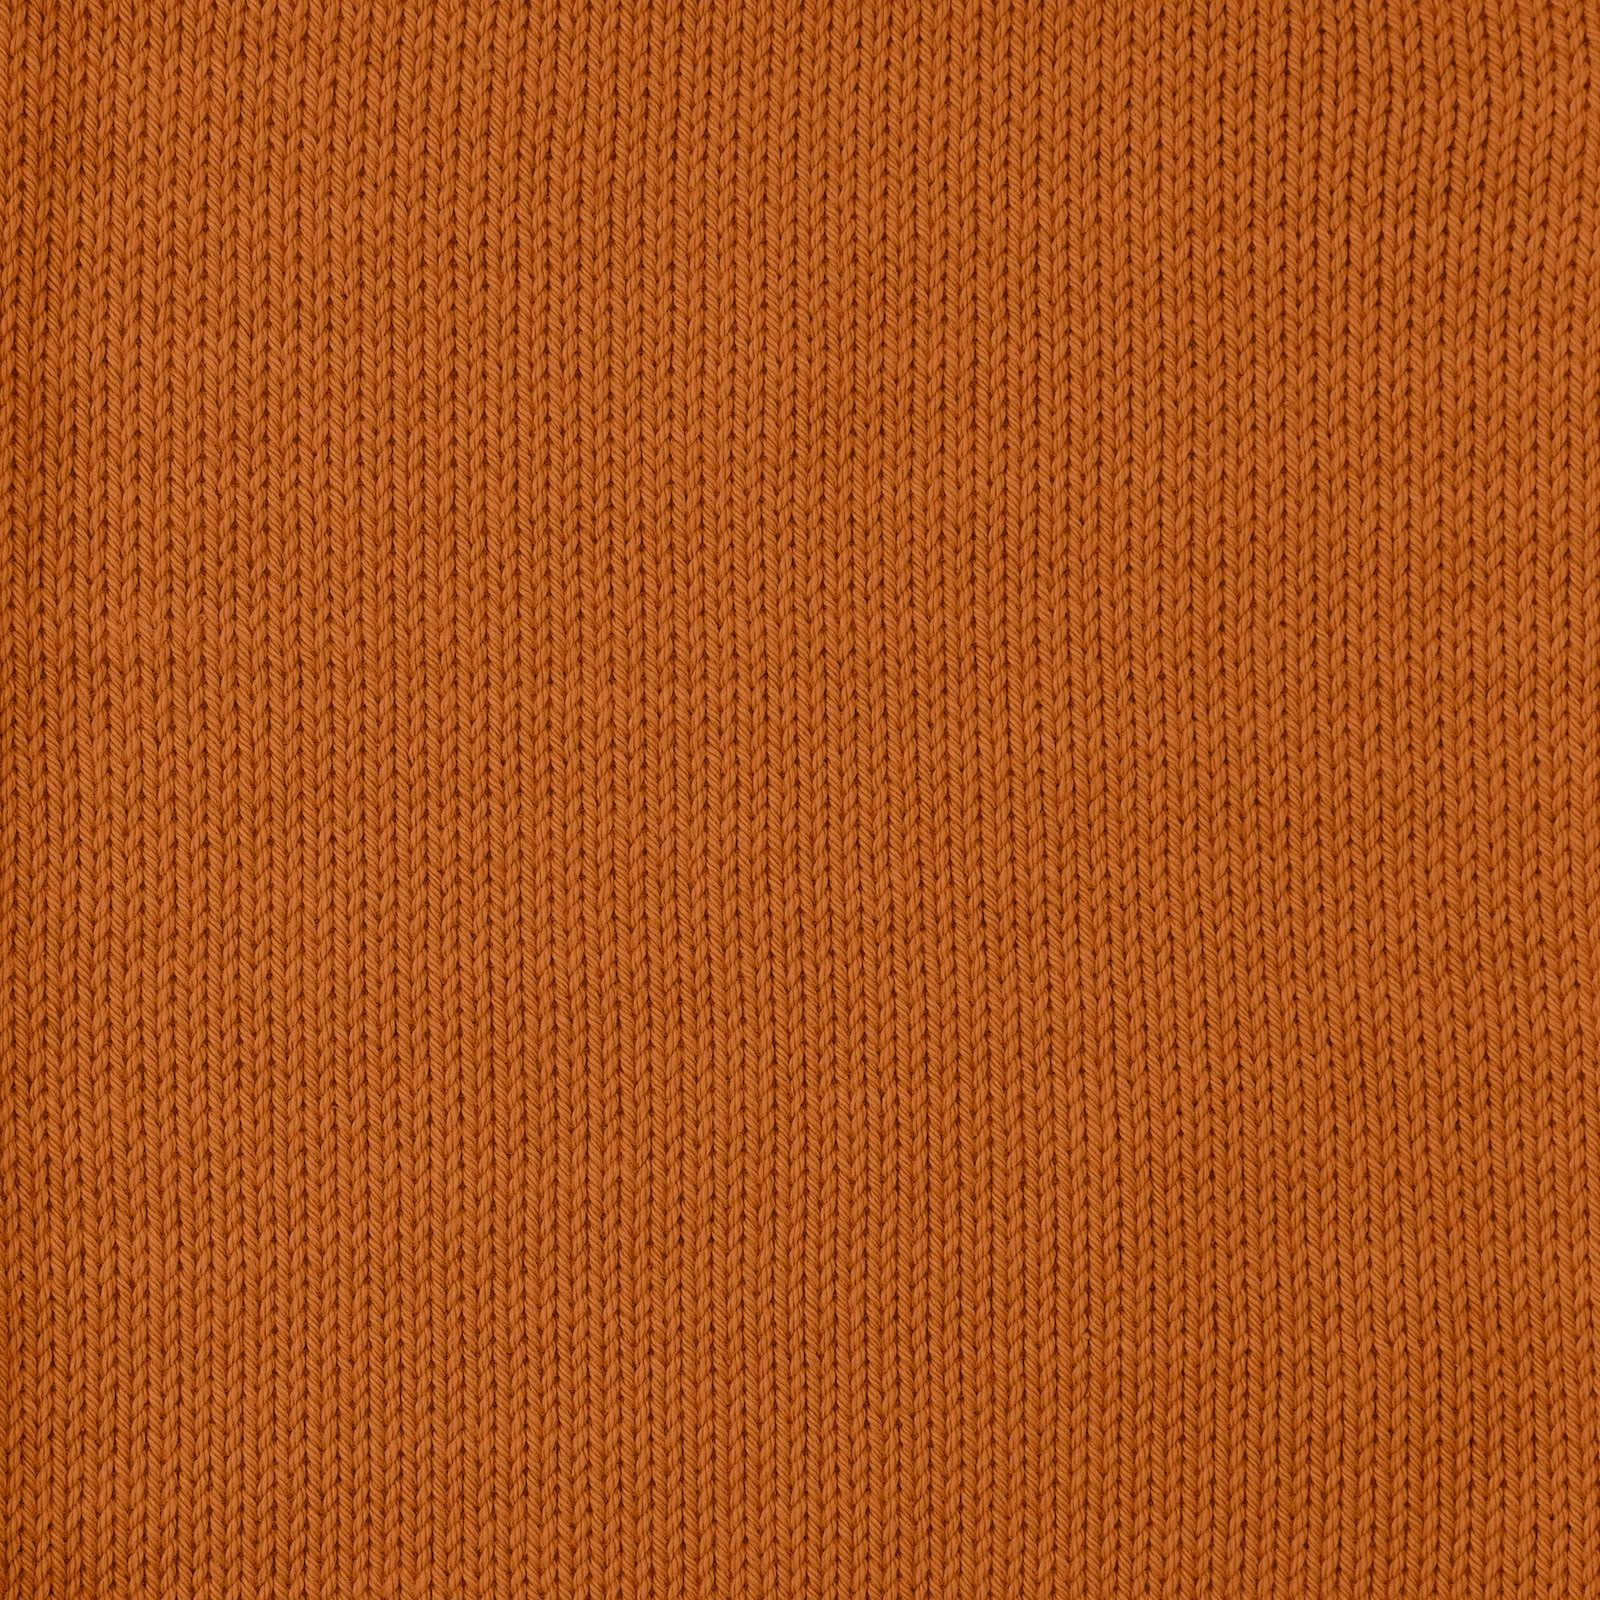 FRAYA, 100% cotton yarn "Colourful", pumpkin 90060009_sskit